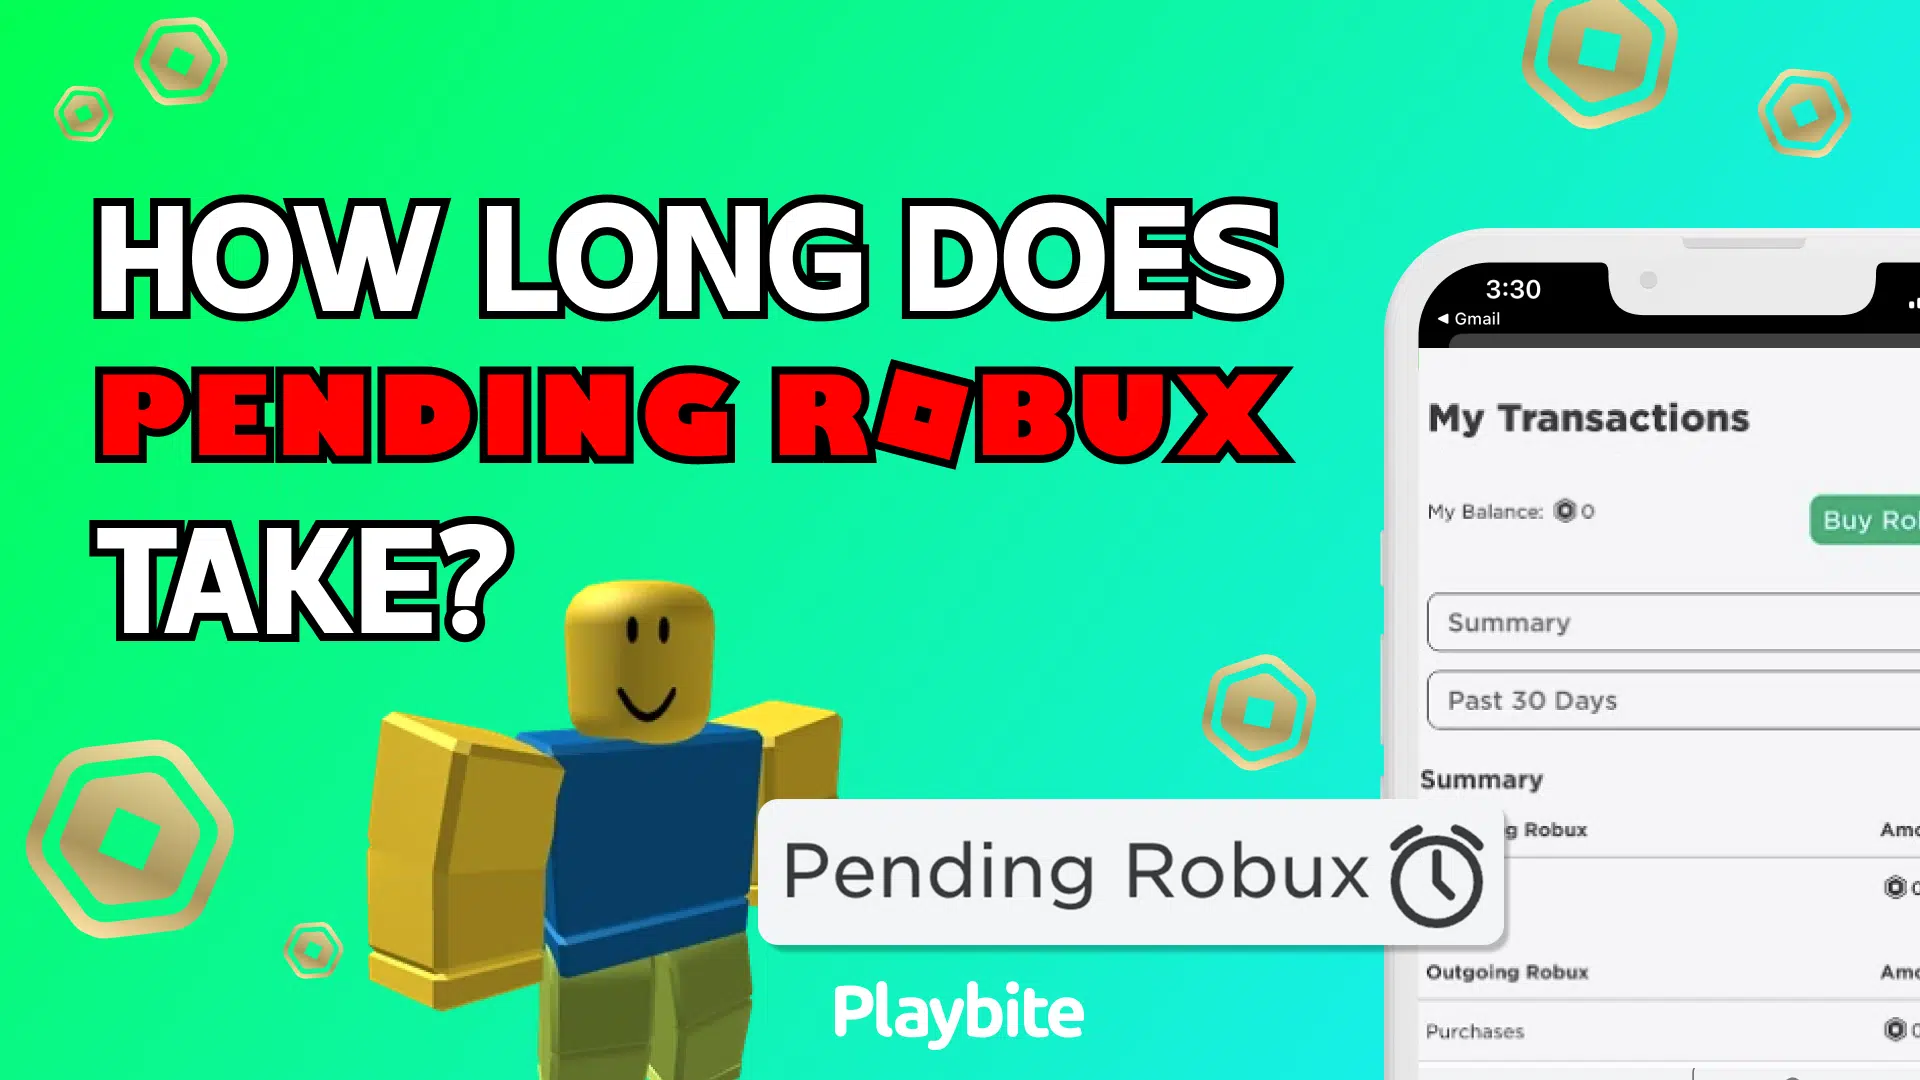 Robux pending system = broken? Or it's just a bug? - Platform